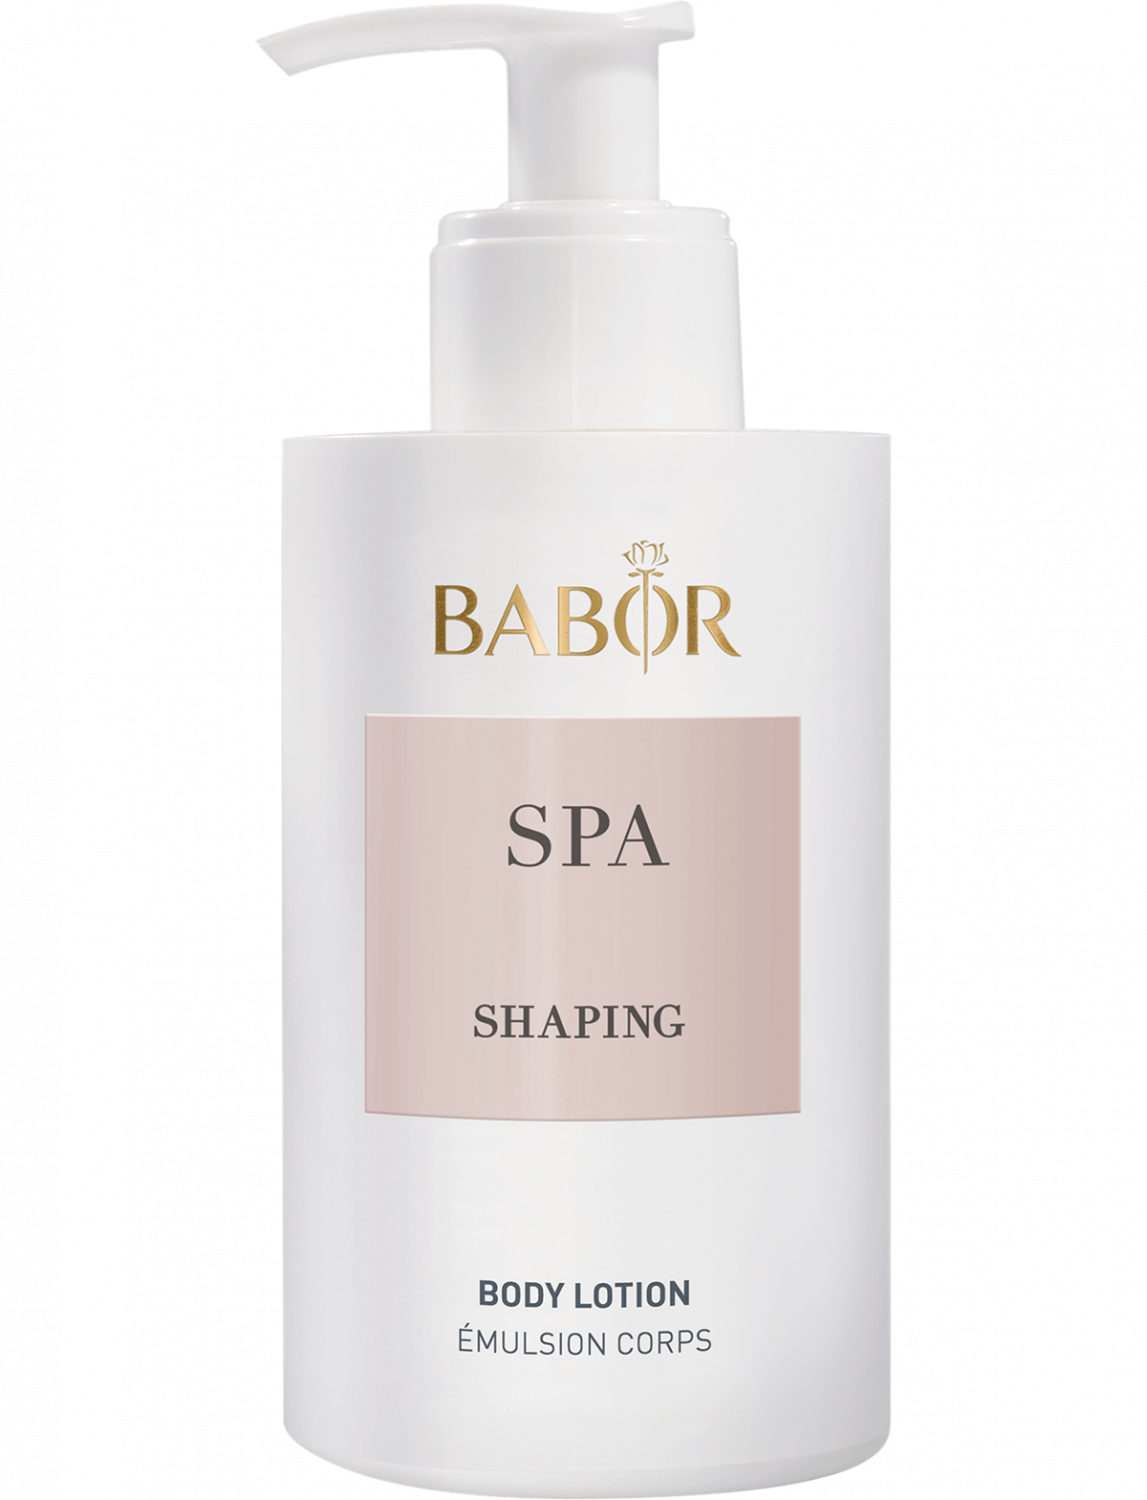 BABOR SPA Shaping Body Lotion 200ml - интернет-магазин профессиональной косметики Spadream, изображение 36559